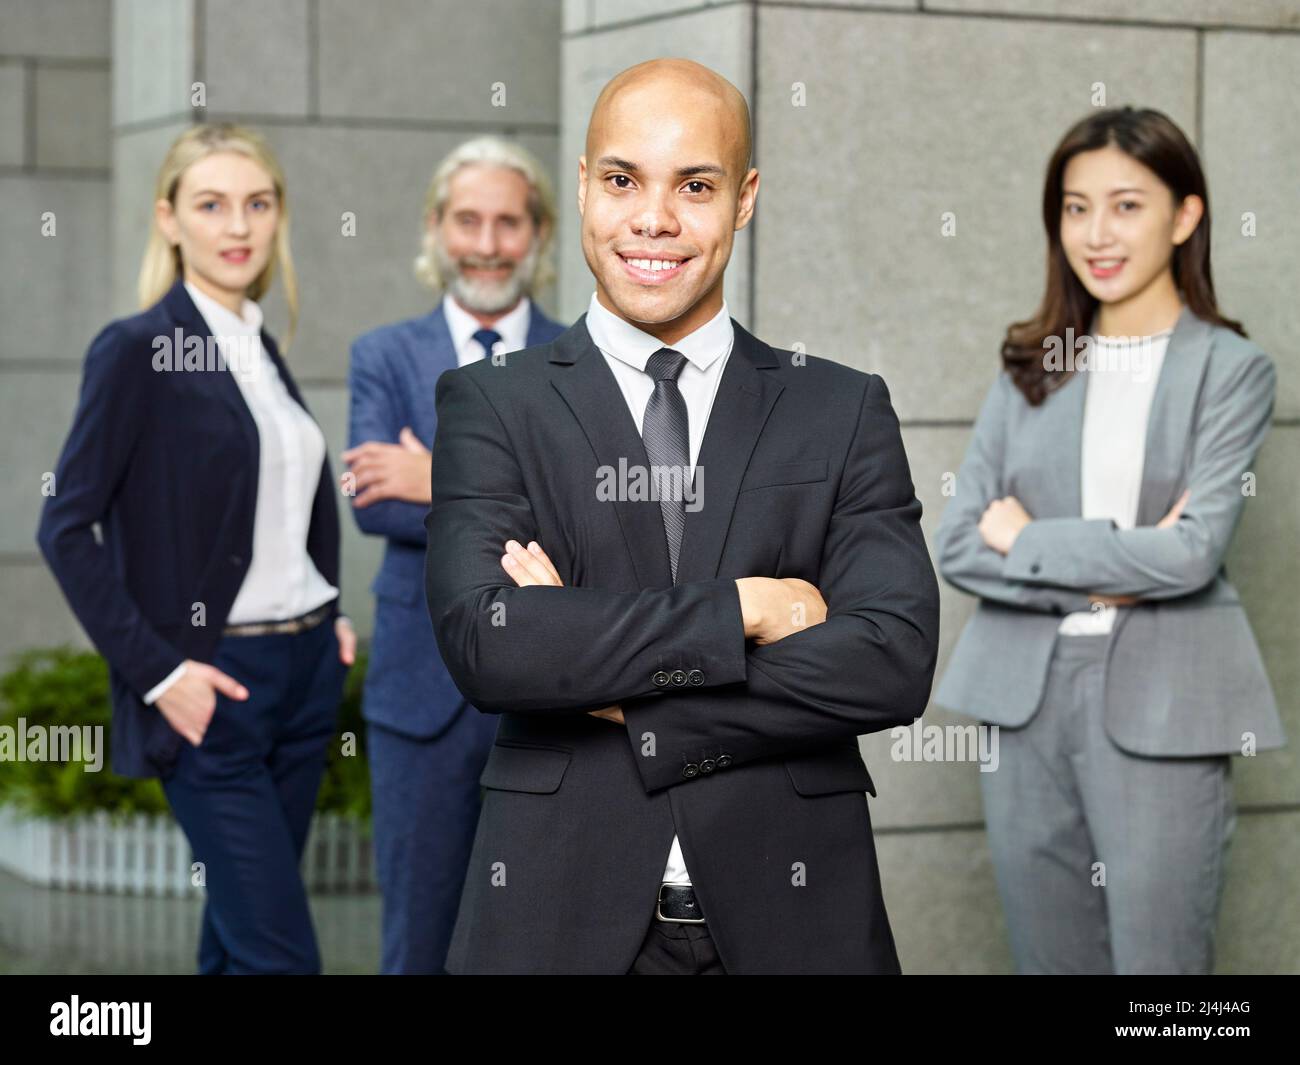 Porträt eines Teams aus multinationalen und multiethnischen Unternehmensleuten, die lächelnd auf die Kamera blicken Stockfoto